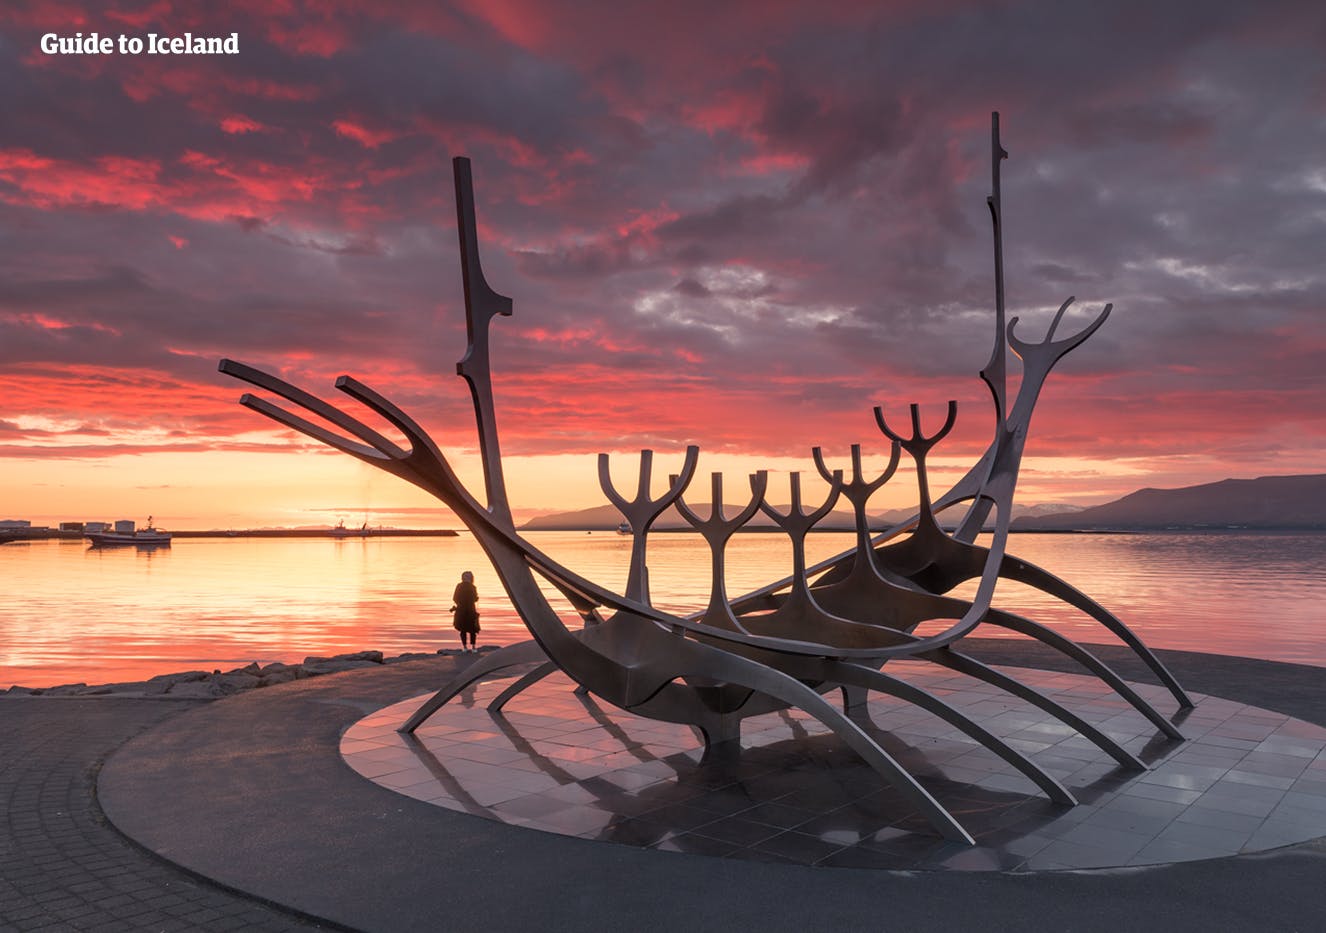 El Monumento Sun Voyager se encuentra en la costa de Reikiavik, no lejos de la Sala de Conciertos Harpa.